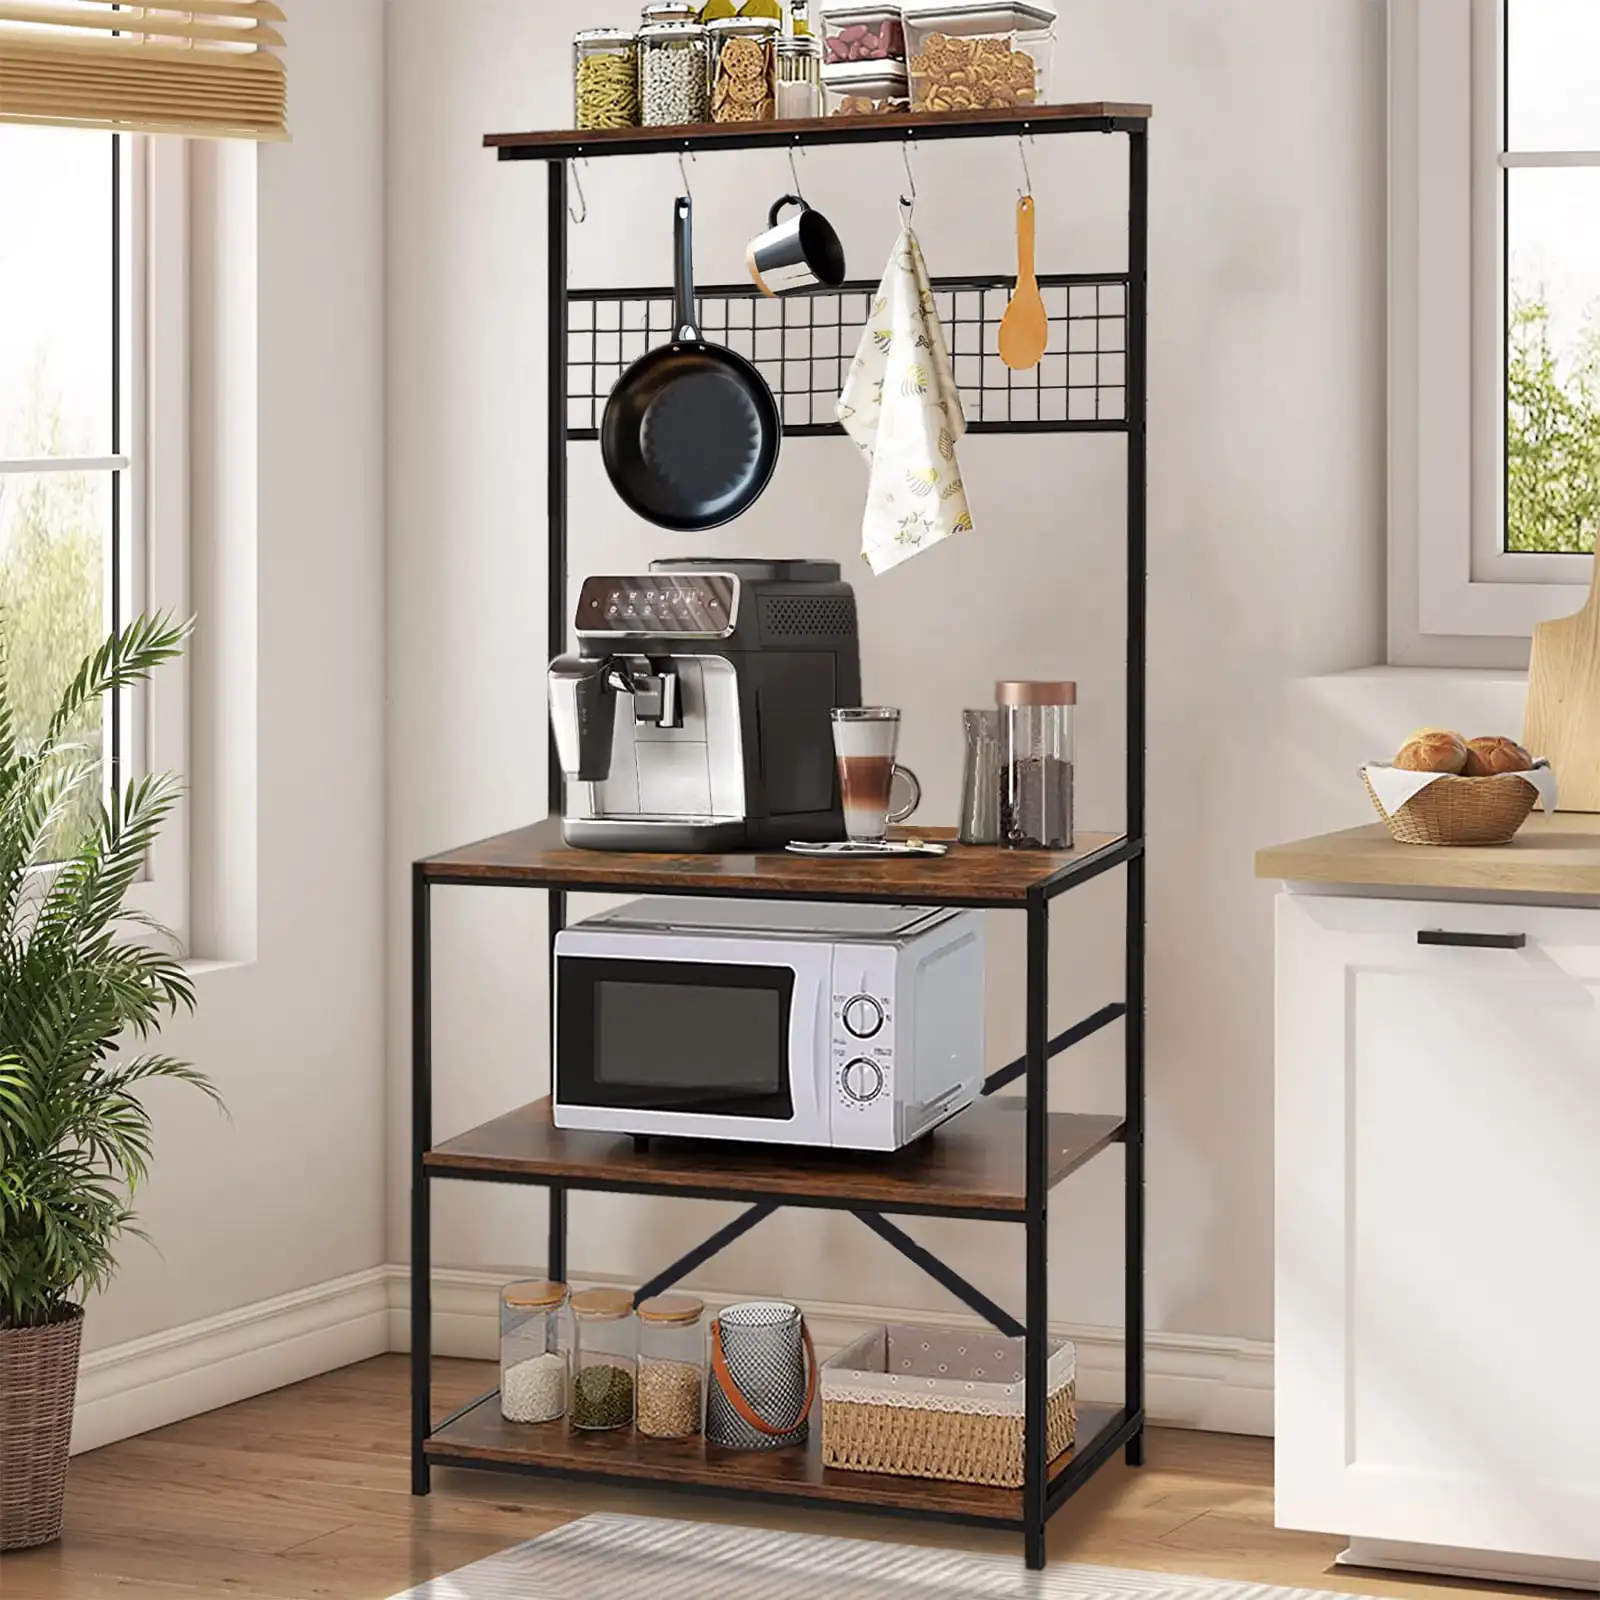 

SUGIFT 4-уровневая стандартная кухонная полка для хранения, стойка для микроволновой печи с 10 крючками